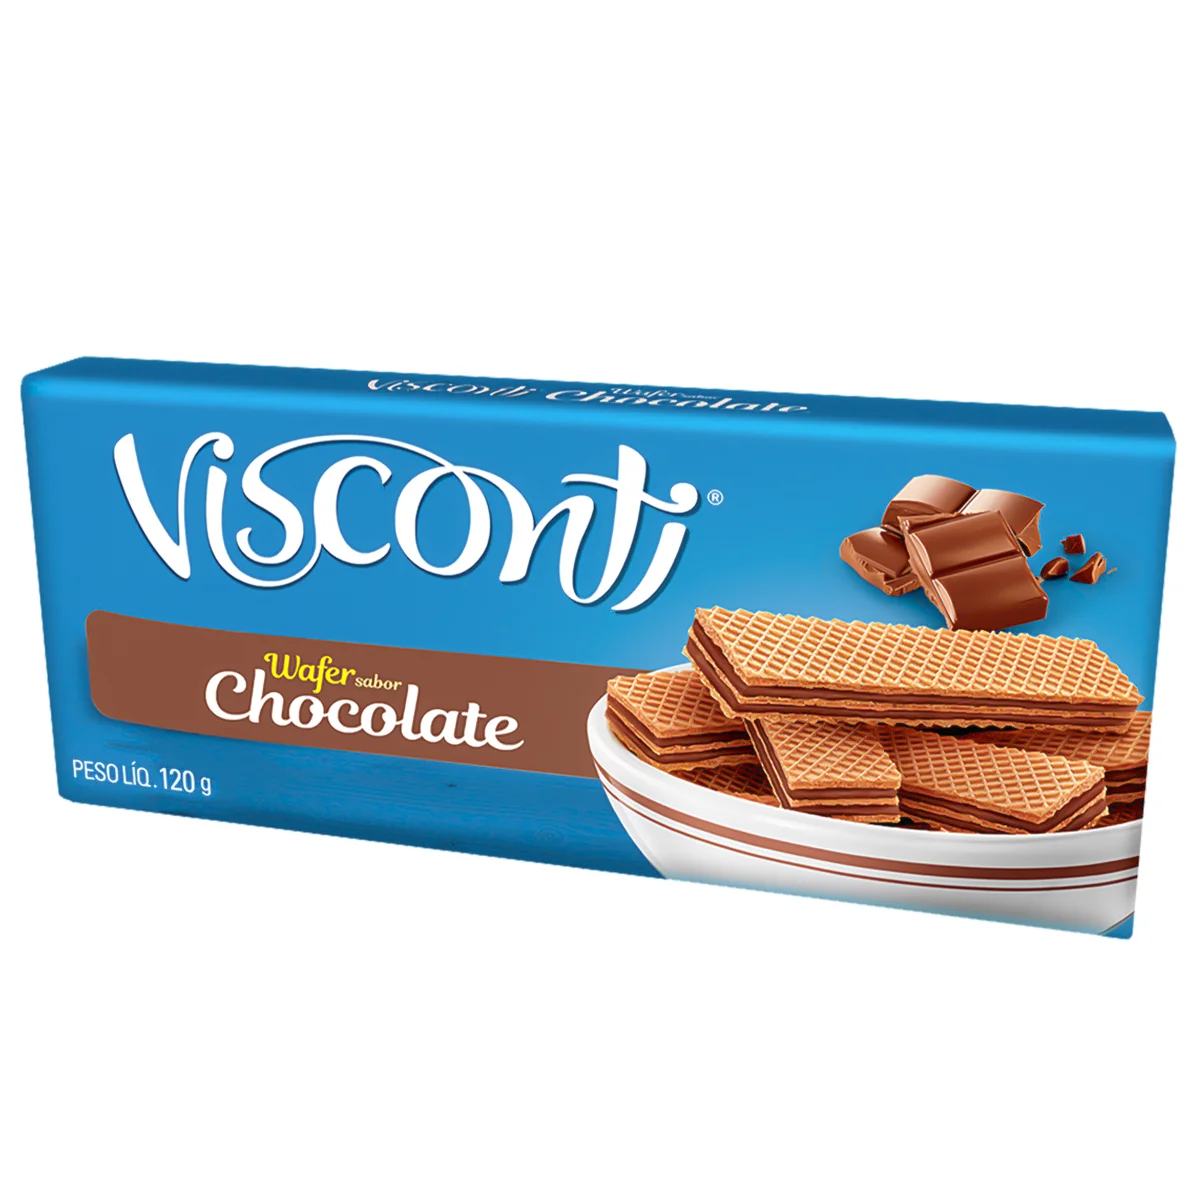 Biscoito Wafer Recheio Chocolate Visconti - 120g